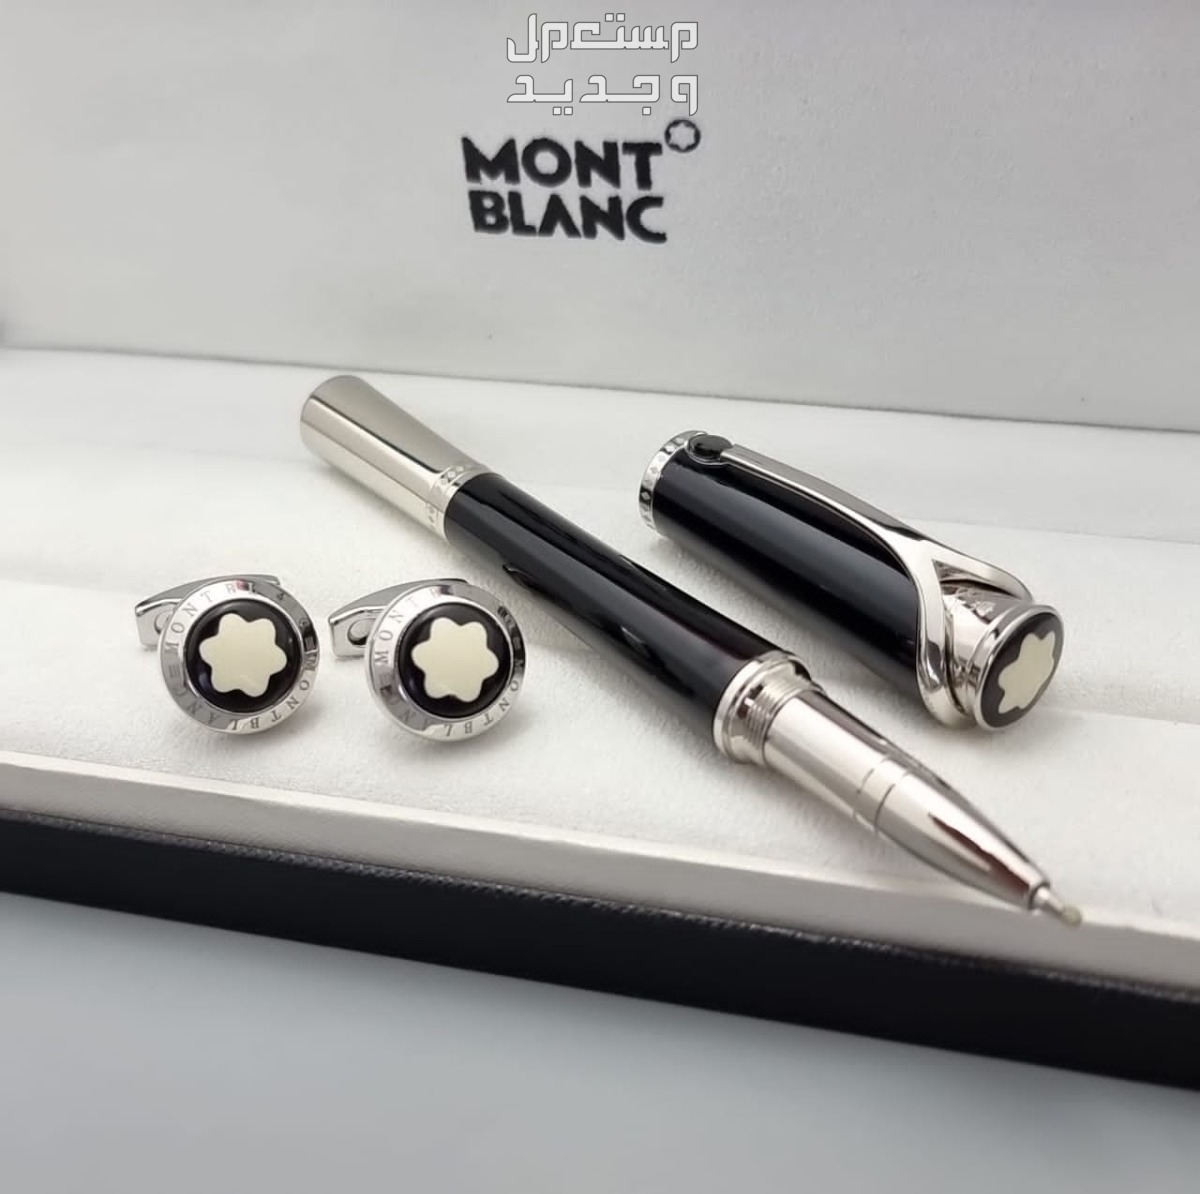 طقم قلم مونت بلانك مع كبك